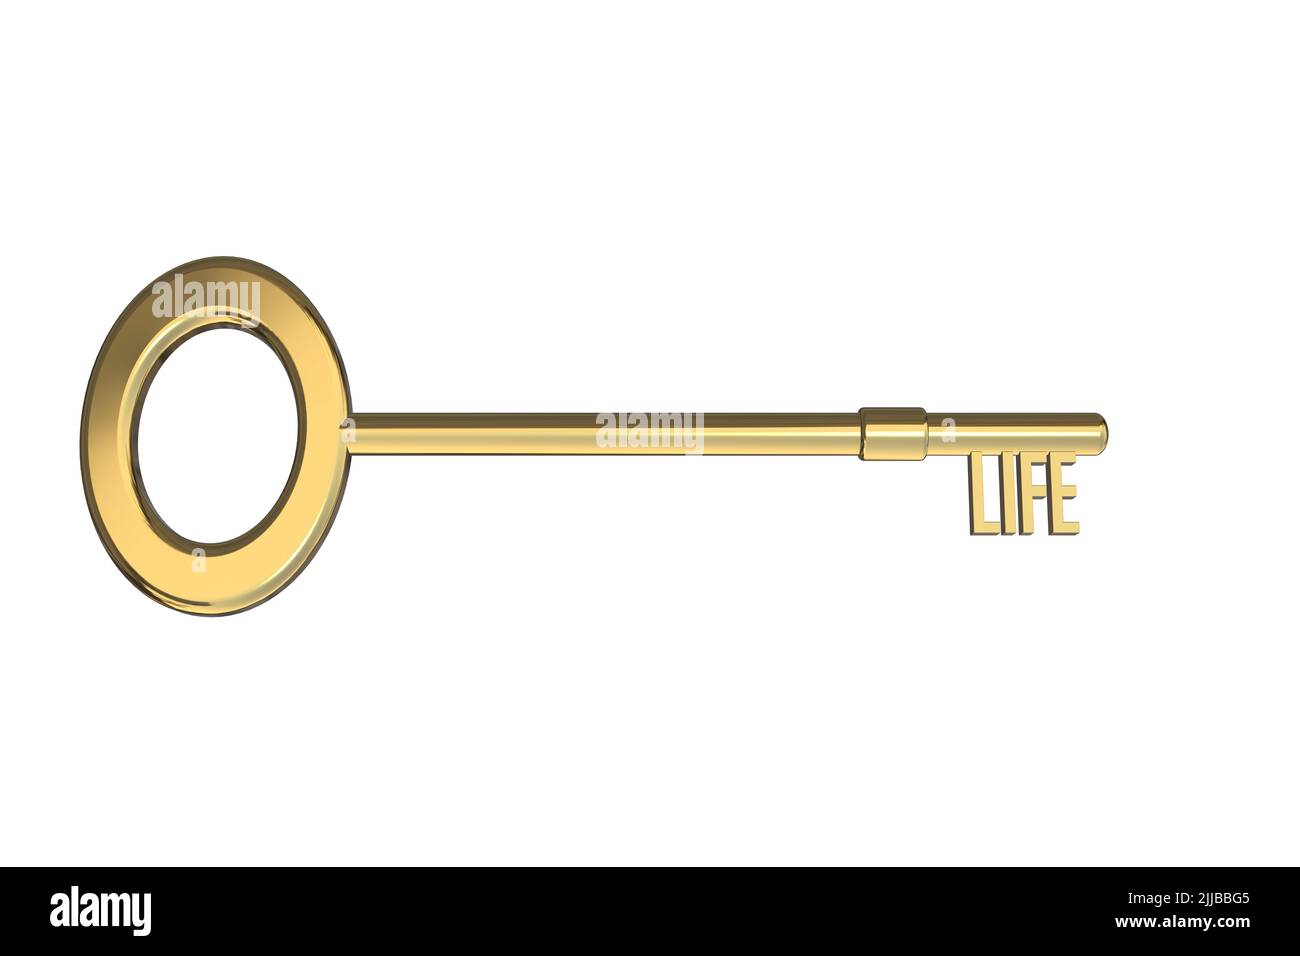 Schlüssel zum Lebenskonzept Bedeutung des Lebenskonzepts Lebenswort auf einem goldenen 3D-Schlüssel, der isoliert auf einem weißen Hintergrund ausgeschnitten wurde Stockfoto